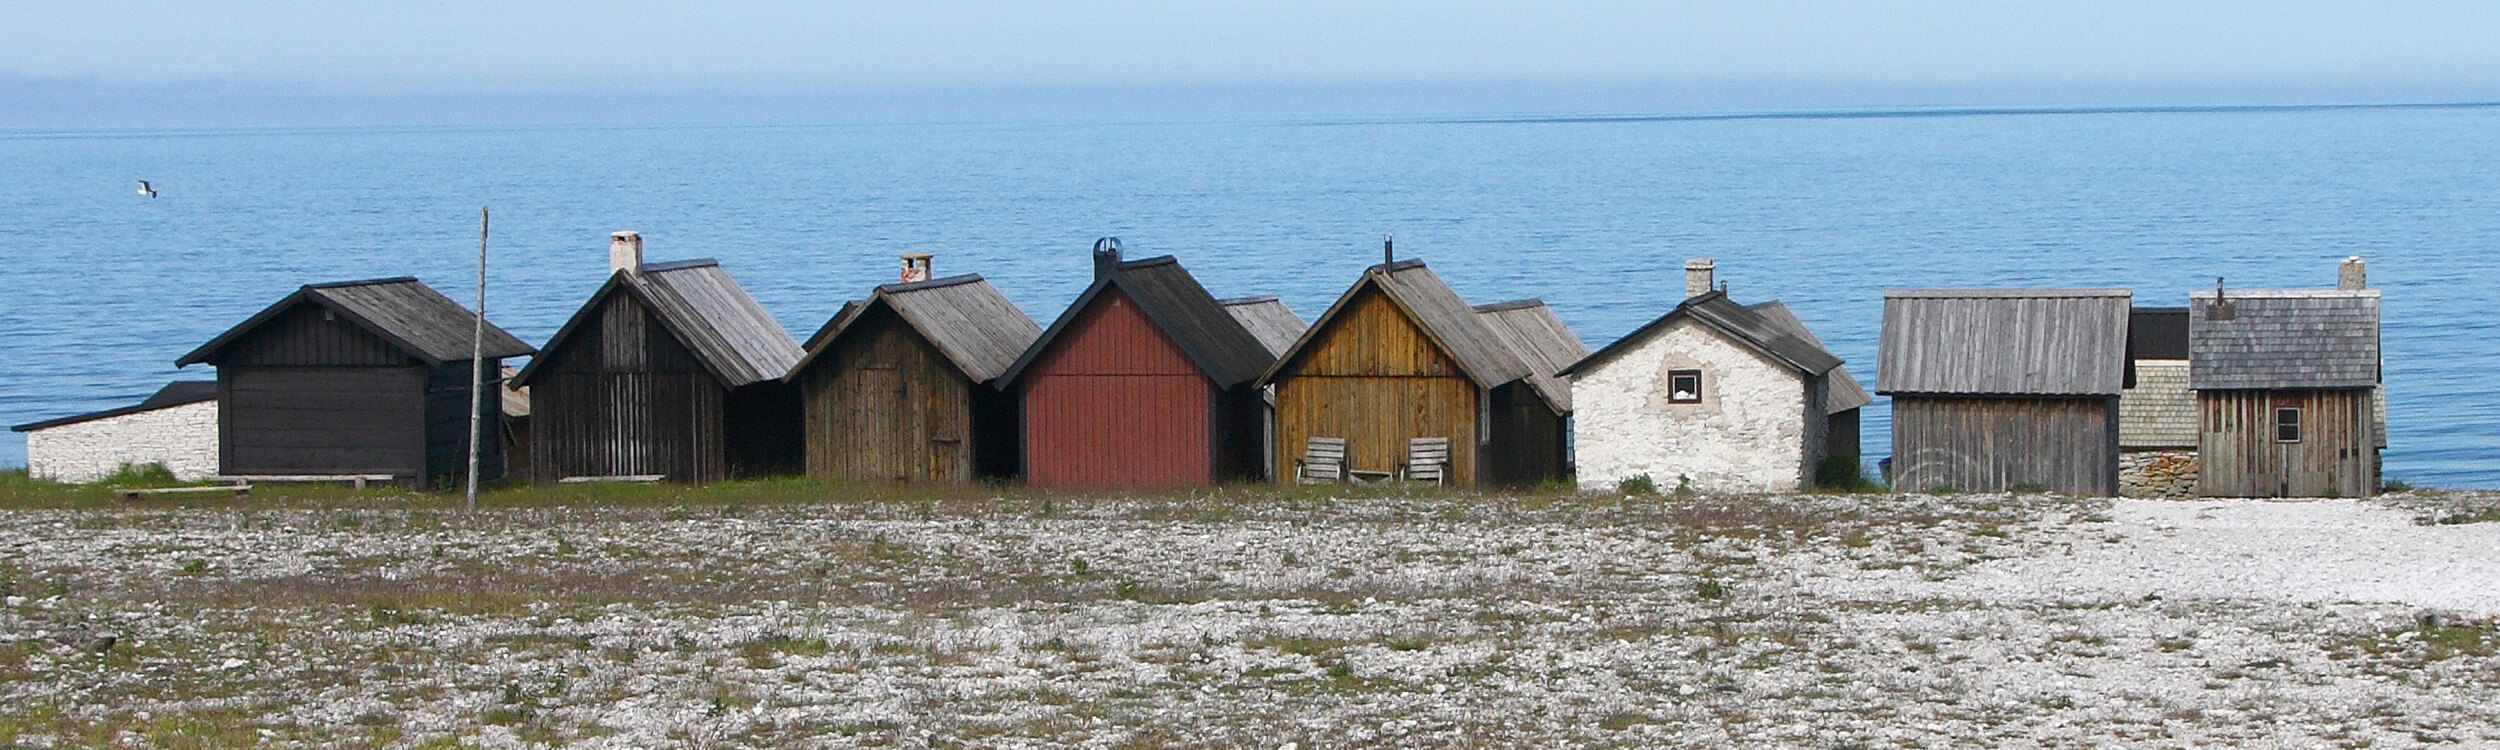  Bodarna i Helgumannens fiskeläge på Fårö. Grundformen är lika men takvinklar, material och kulör varierar 